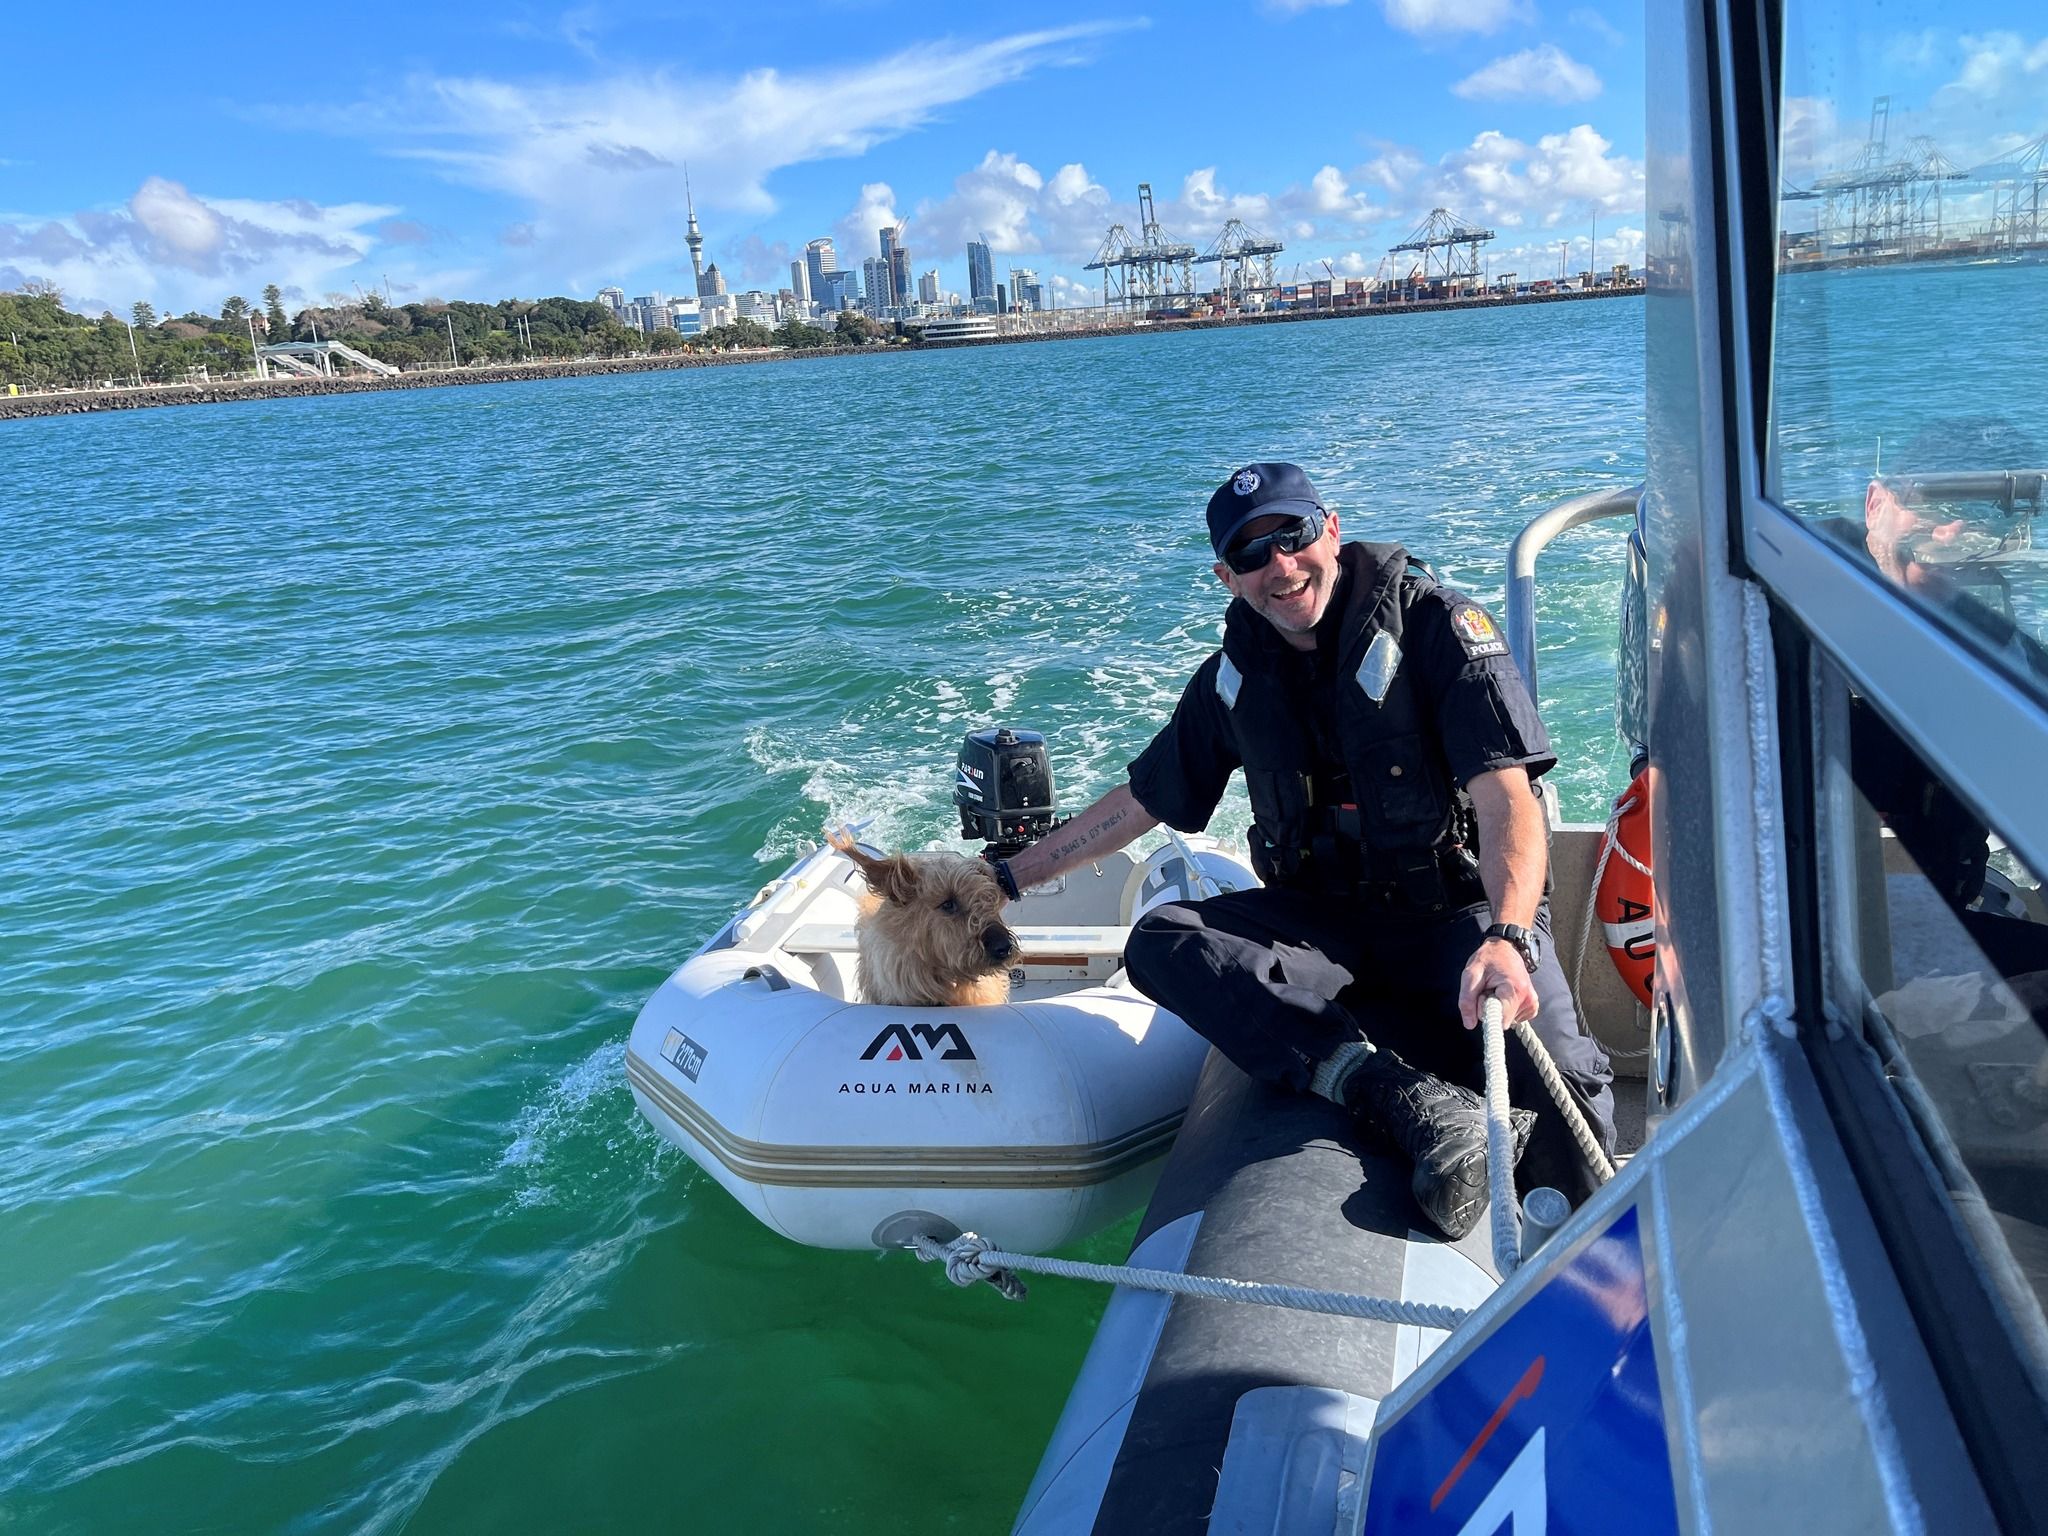 Полиция спасла собаку, которую нашли на маленькой лодке, дрейфующей в море